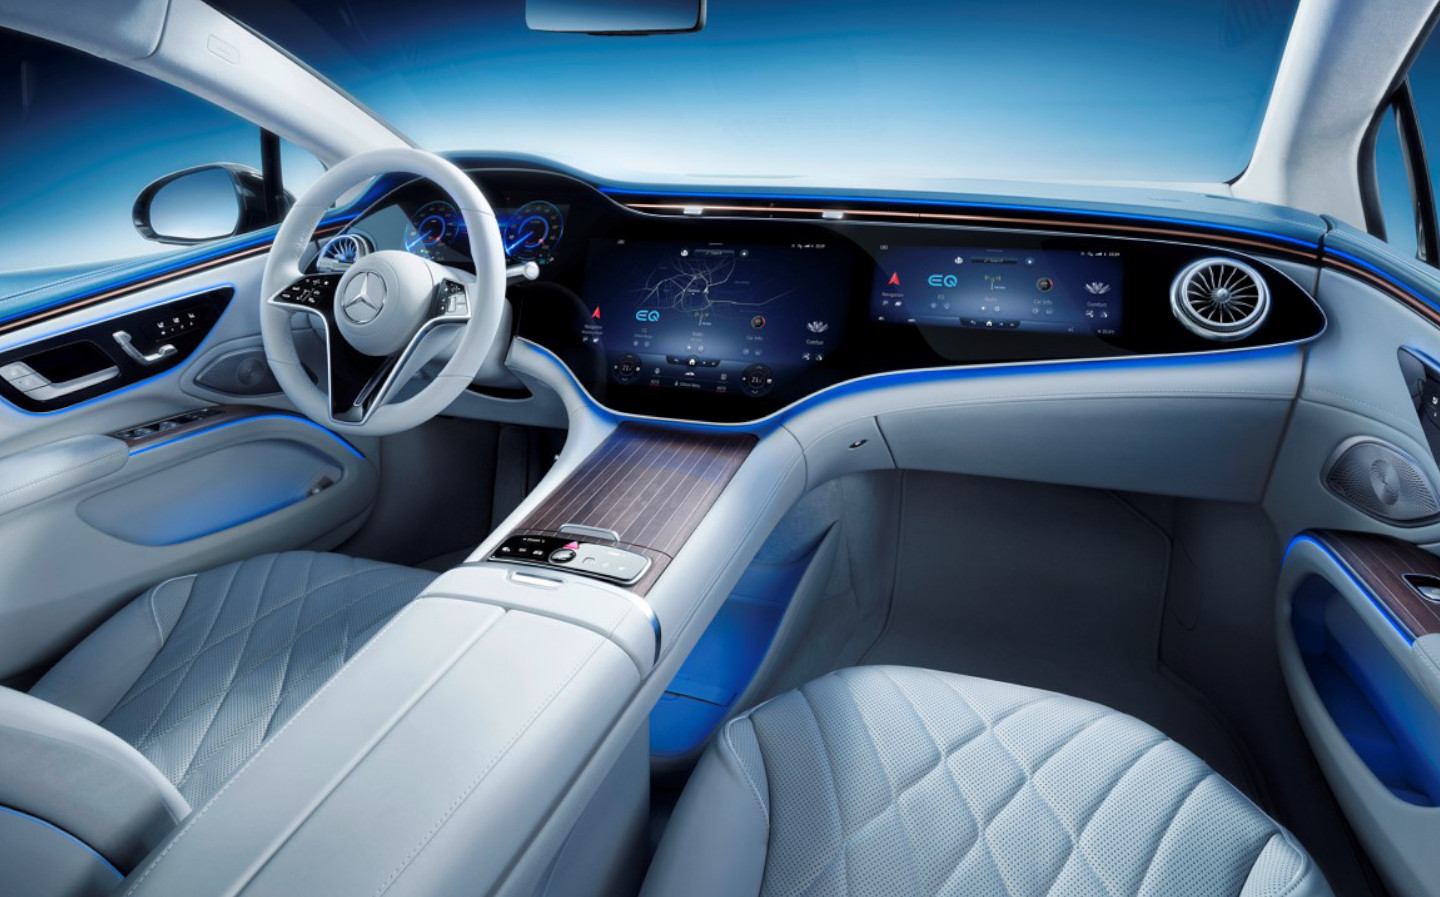 Mercedes' Tesla Model S-rivalling luxury car triple-screen digital